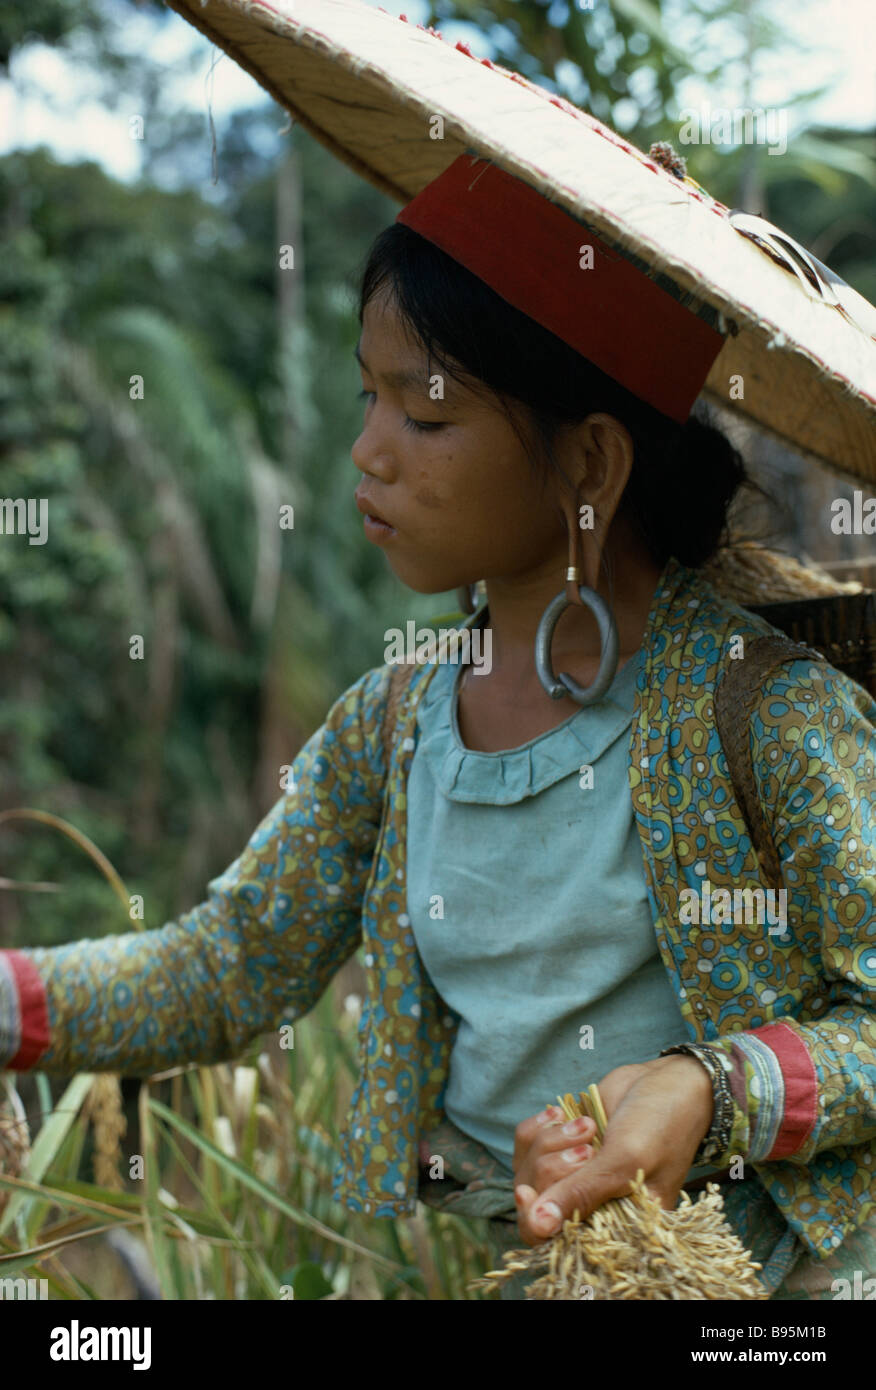 MALAYSIA Southeast Asia Borneo Sarawak Kayan giovane donna con orecchioni allungato e orecchini pesanti. Sub-gruppo di persone Dayak Foto Stock